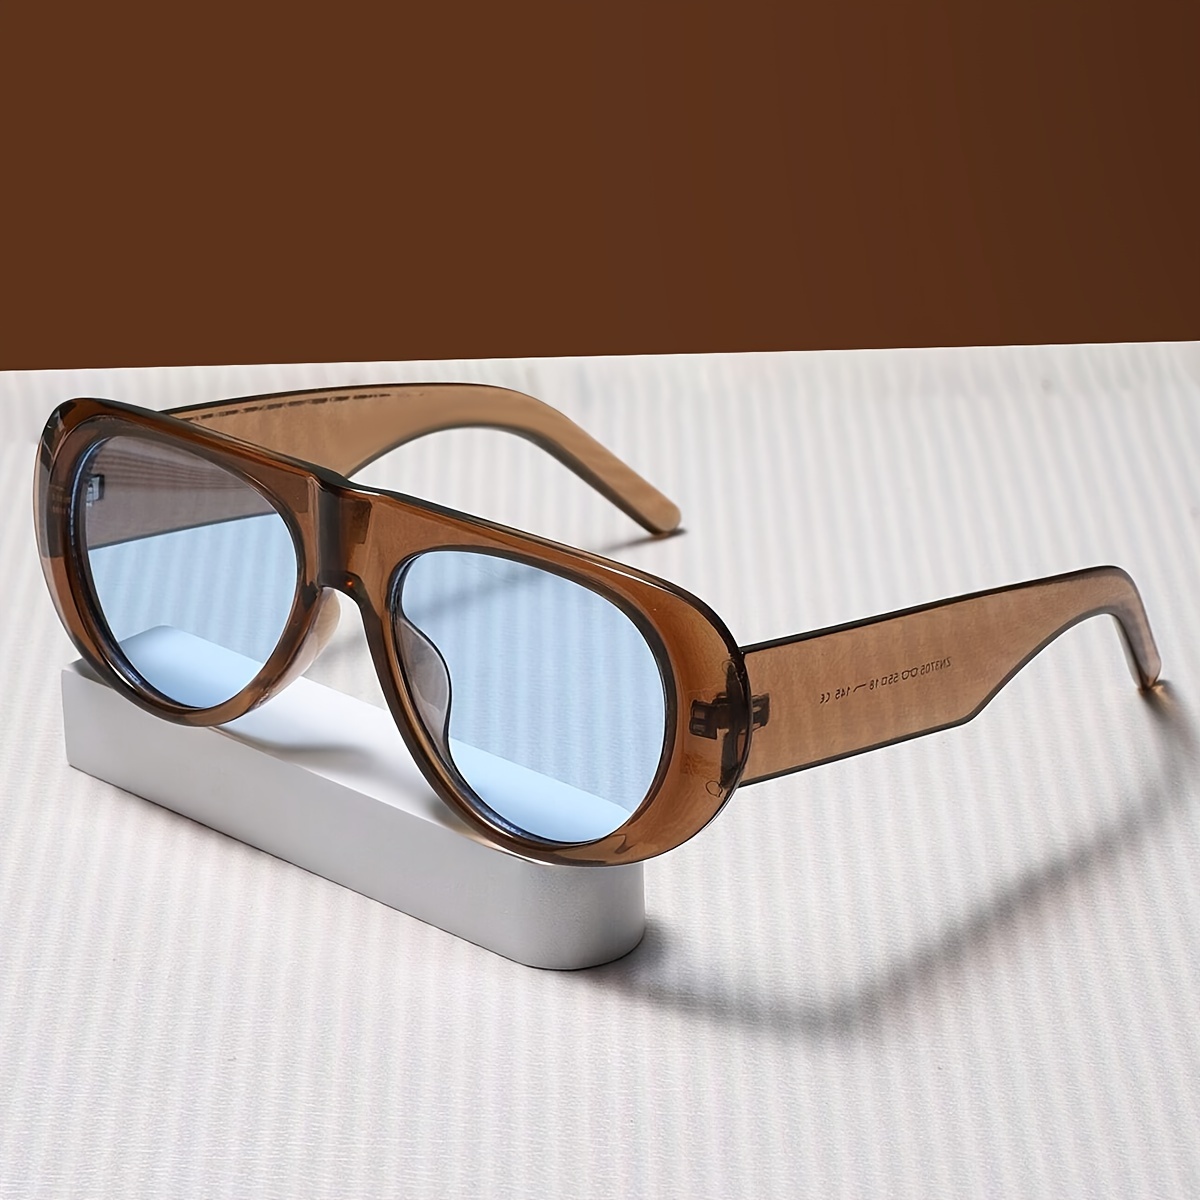 

Retro Oval Fashion Glasses For Women Men Classic Anti Glare Decorative Sun Shades For Vacation Beach Party